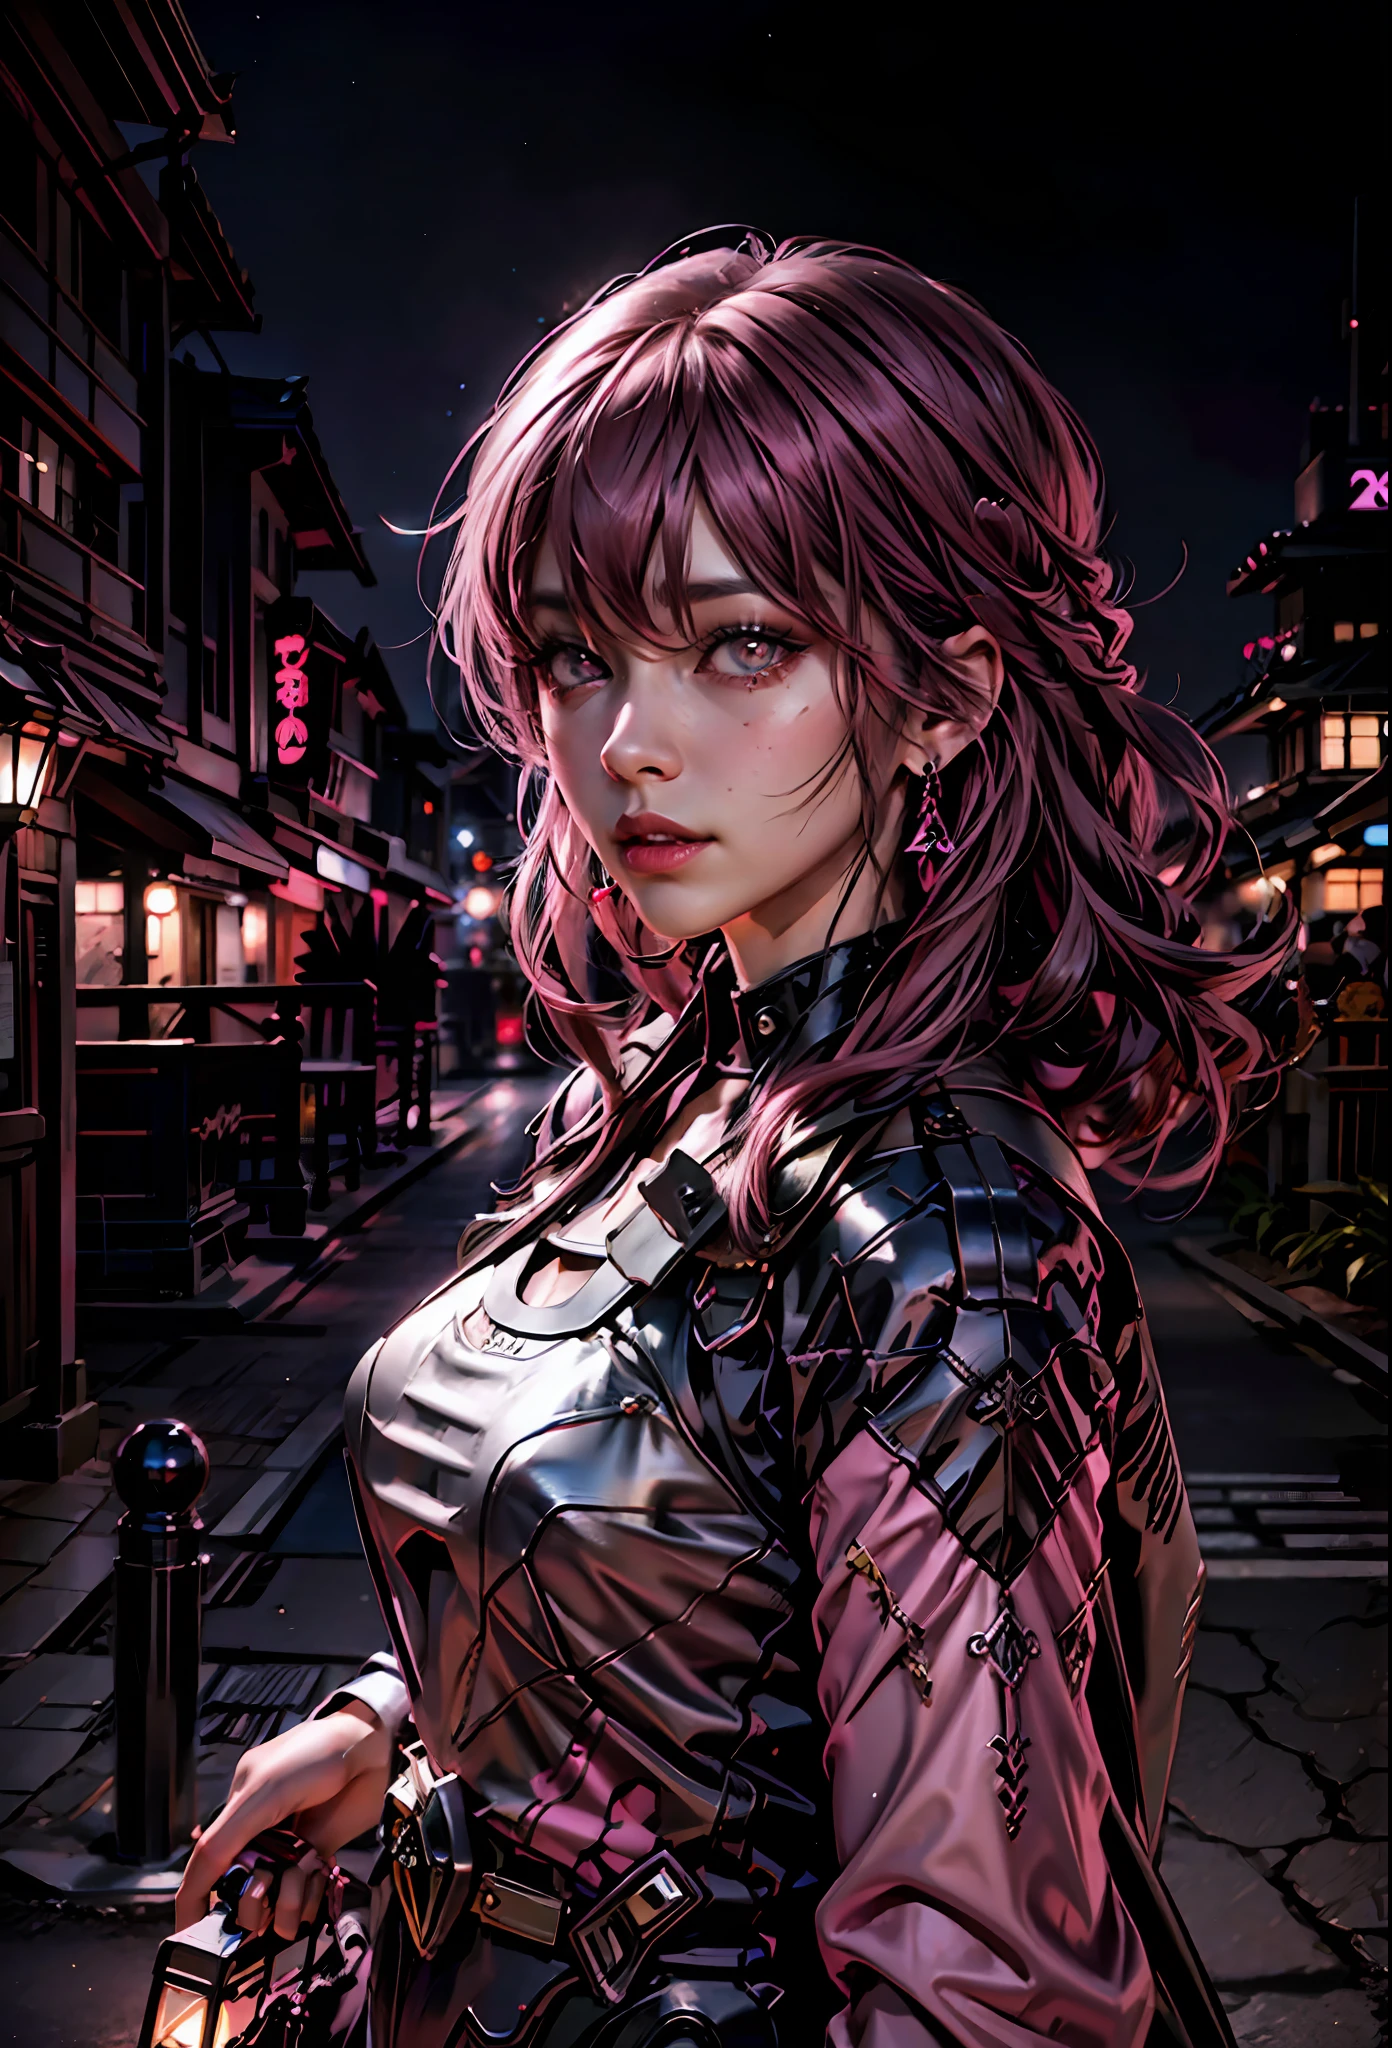 黑色 粉紅色 ,粉紅色頭髮的性感女孩, 粉紅色的眼睛 , 在夜晚的日本城市背景中,蘭博基尼旁邊